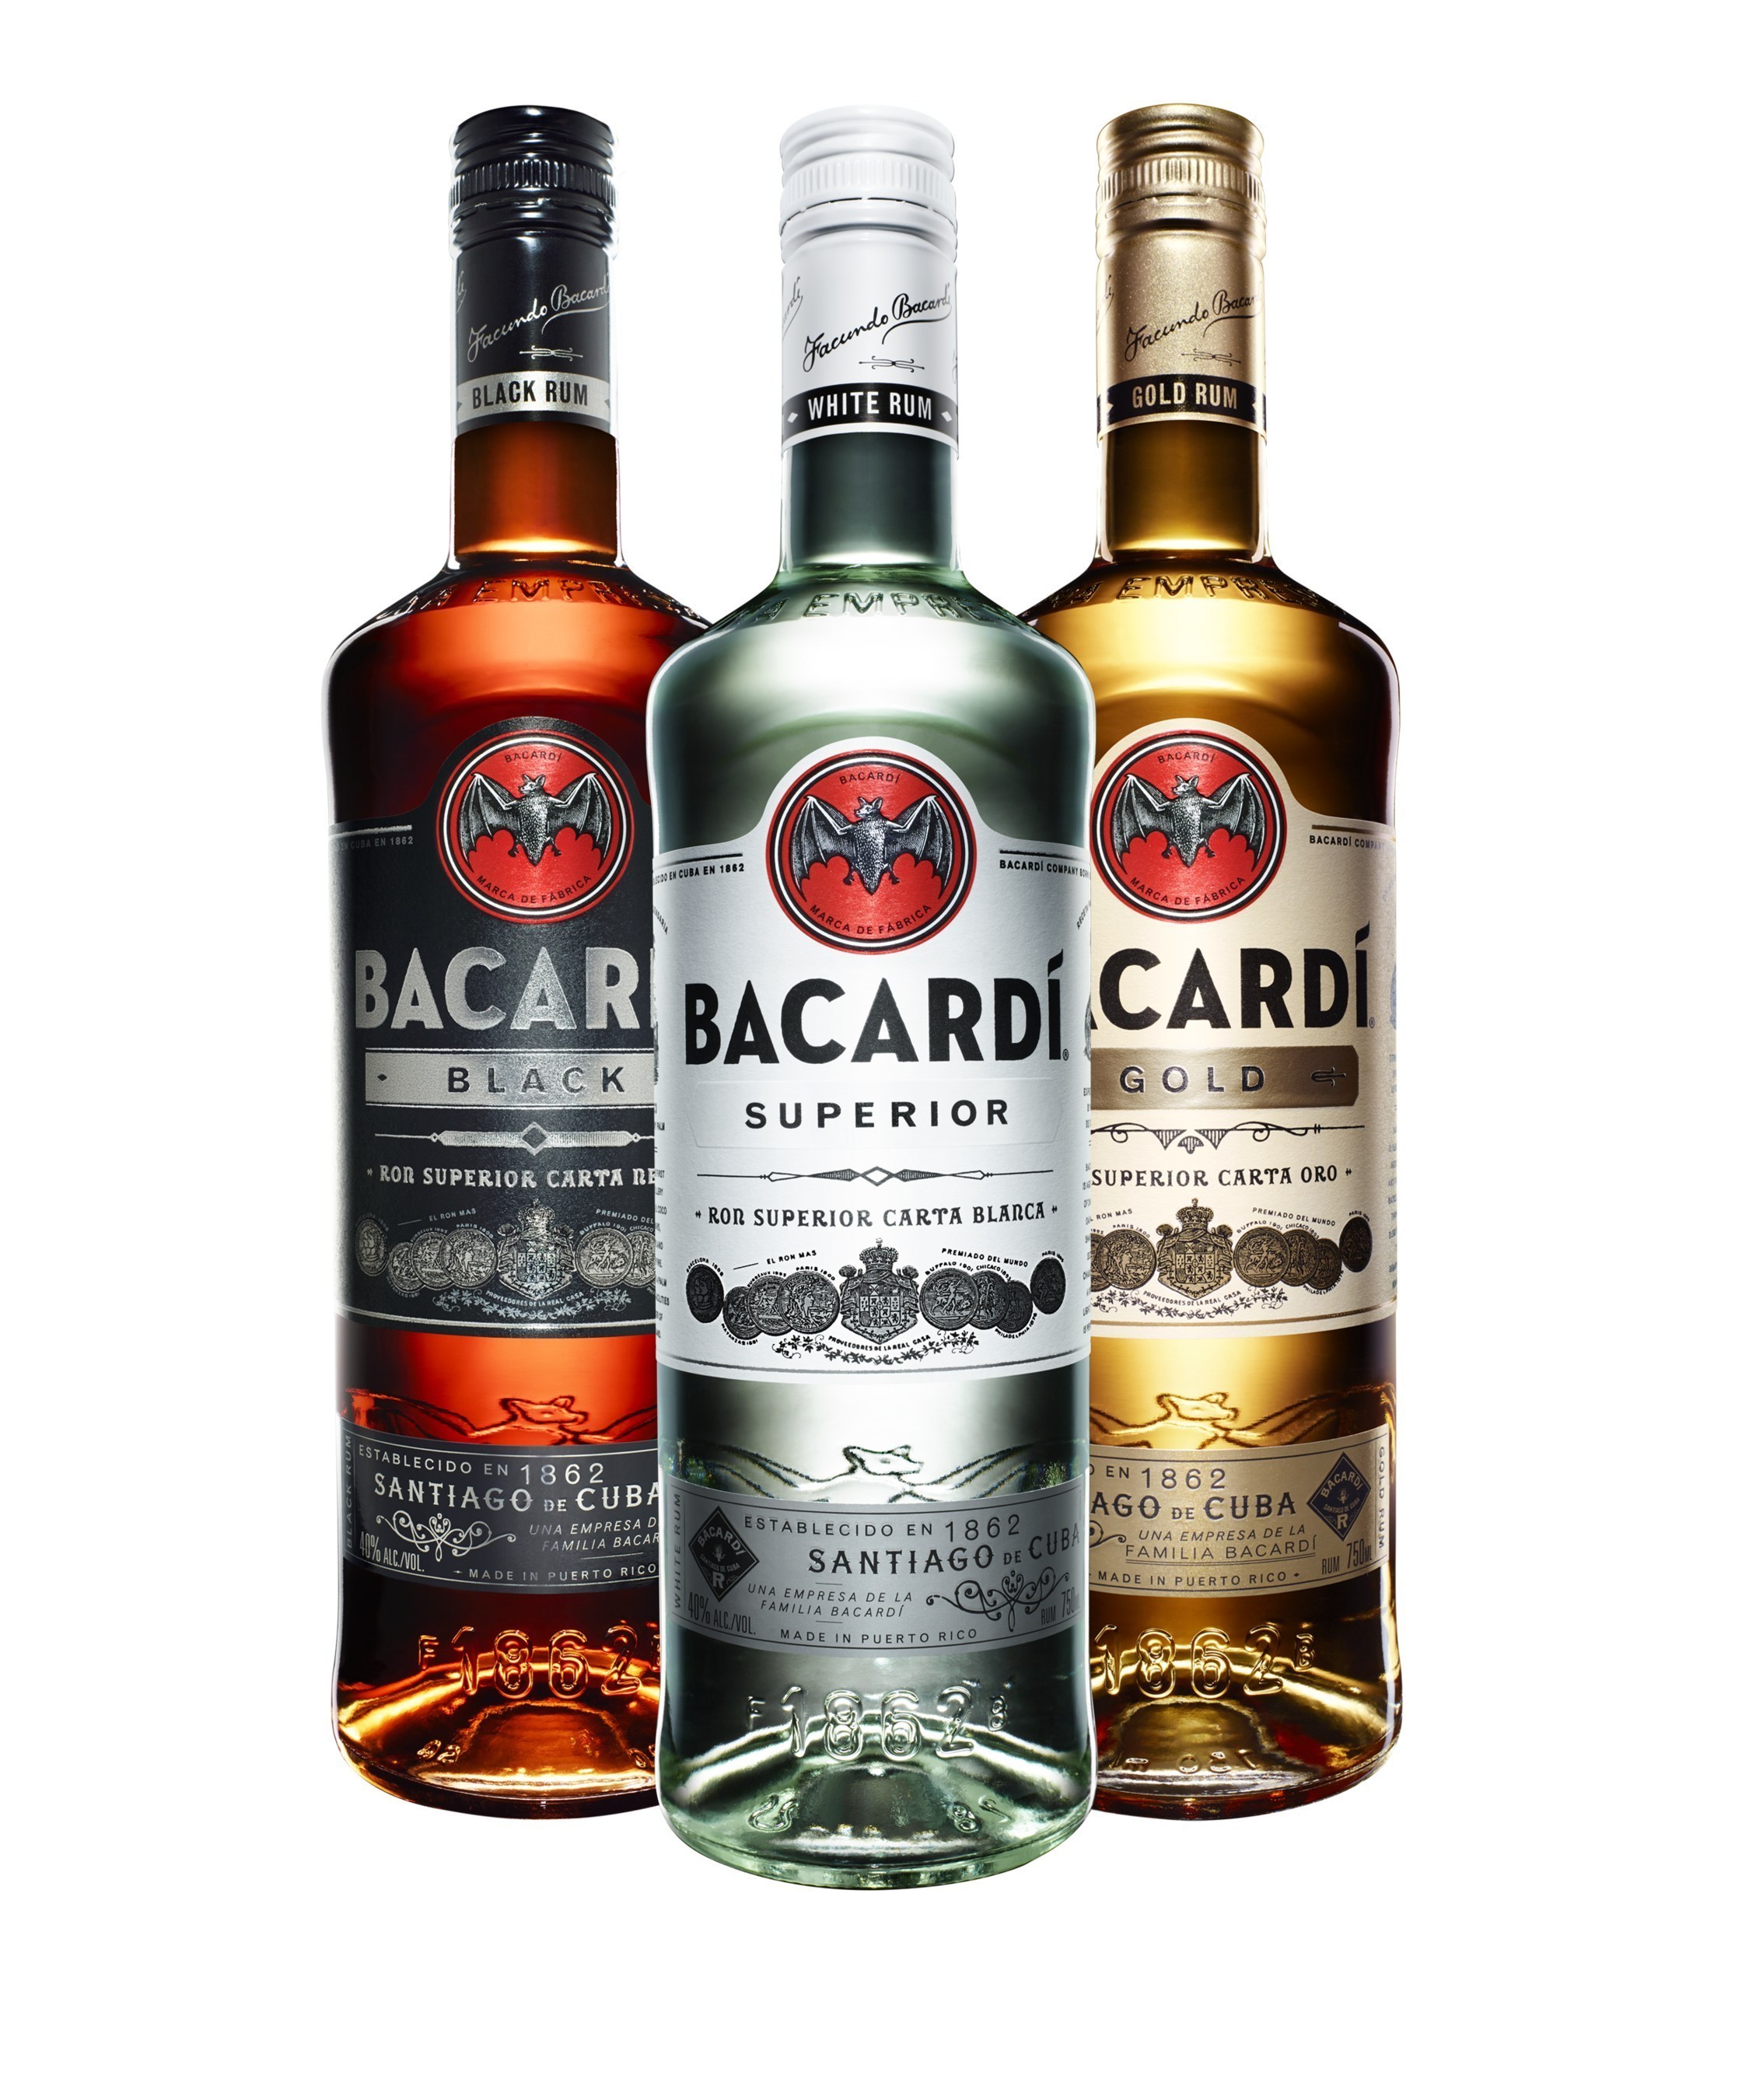 BACARDI Rum New Pack Design